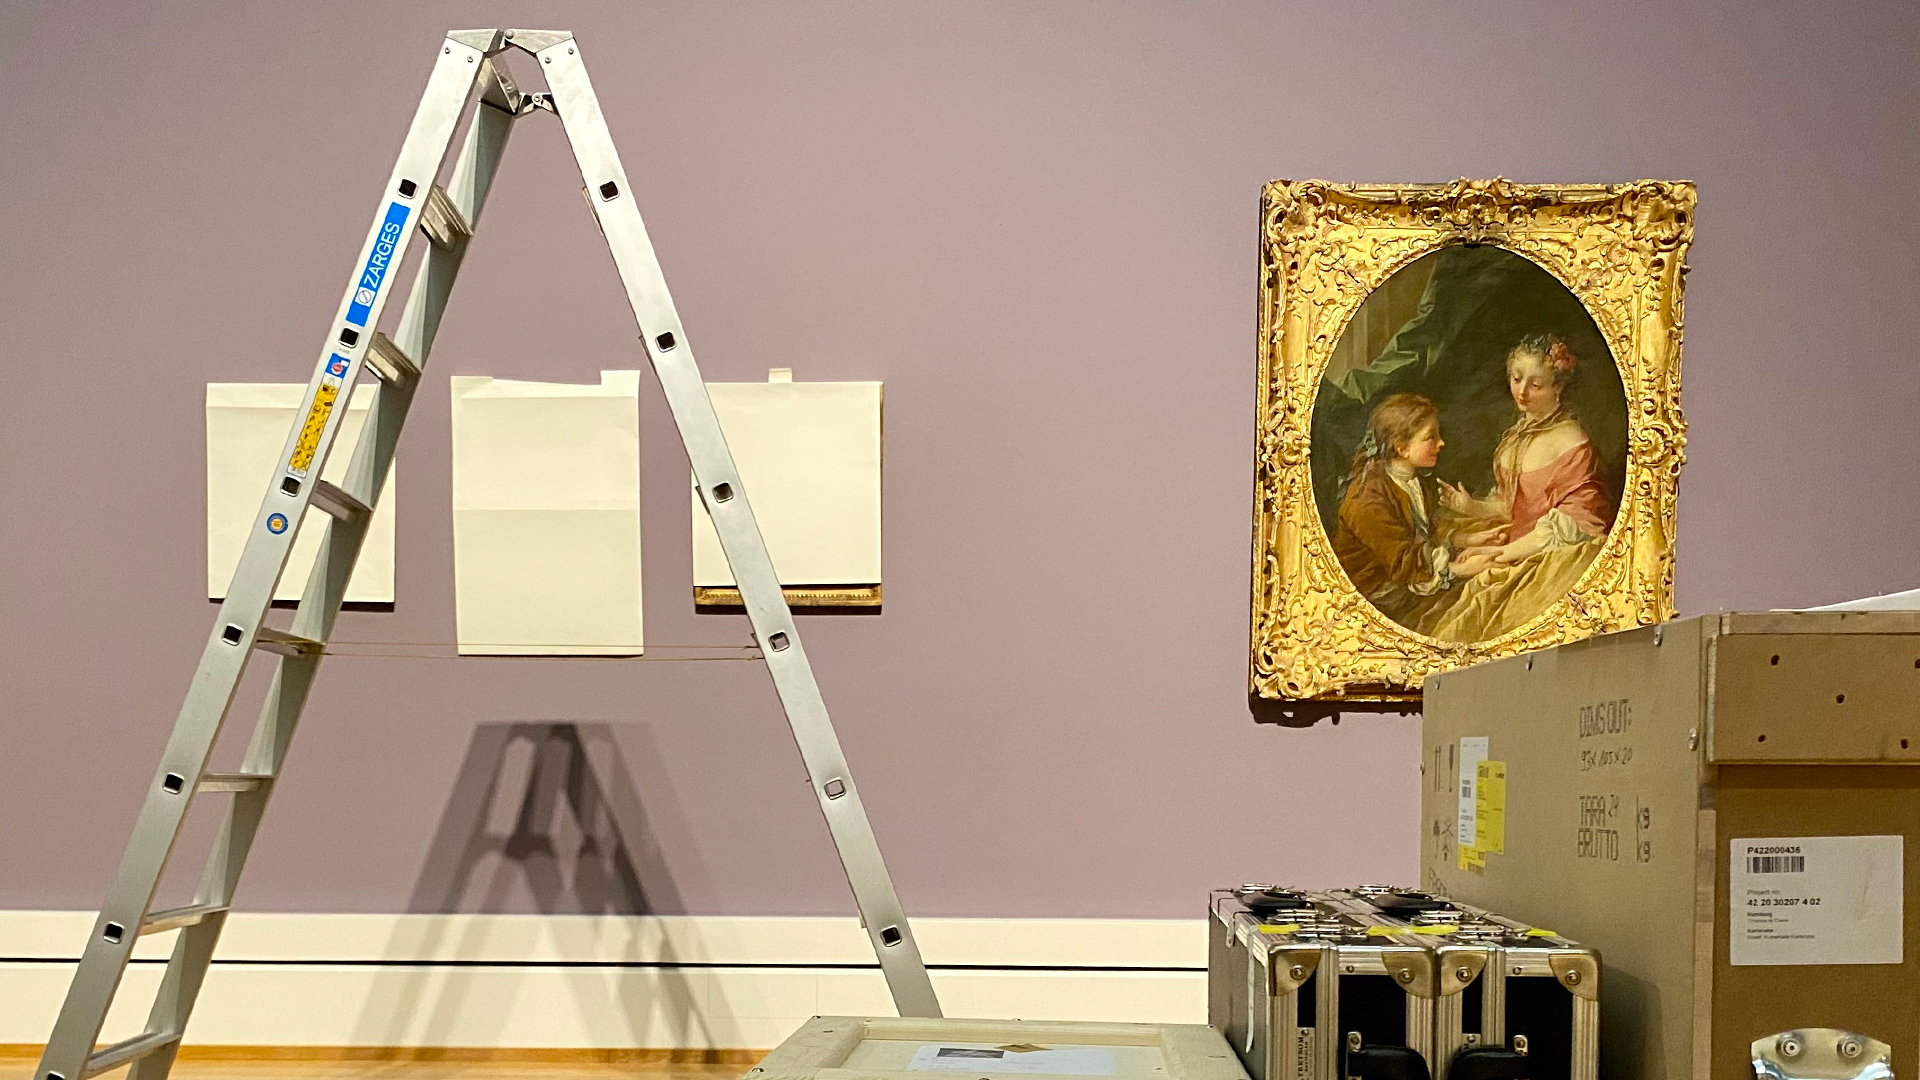 Blick in den Aufbau der Boucher-Ausstellung, mit einigen Kisten, einer Leiter und einem Gemälde